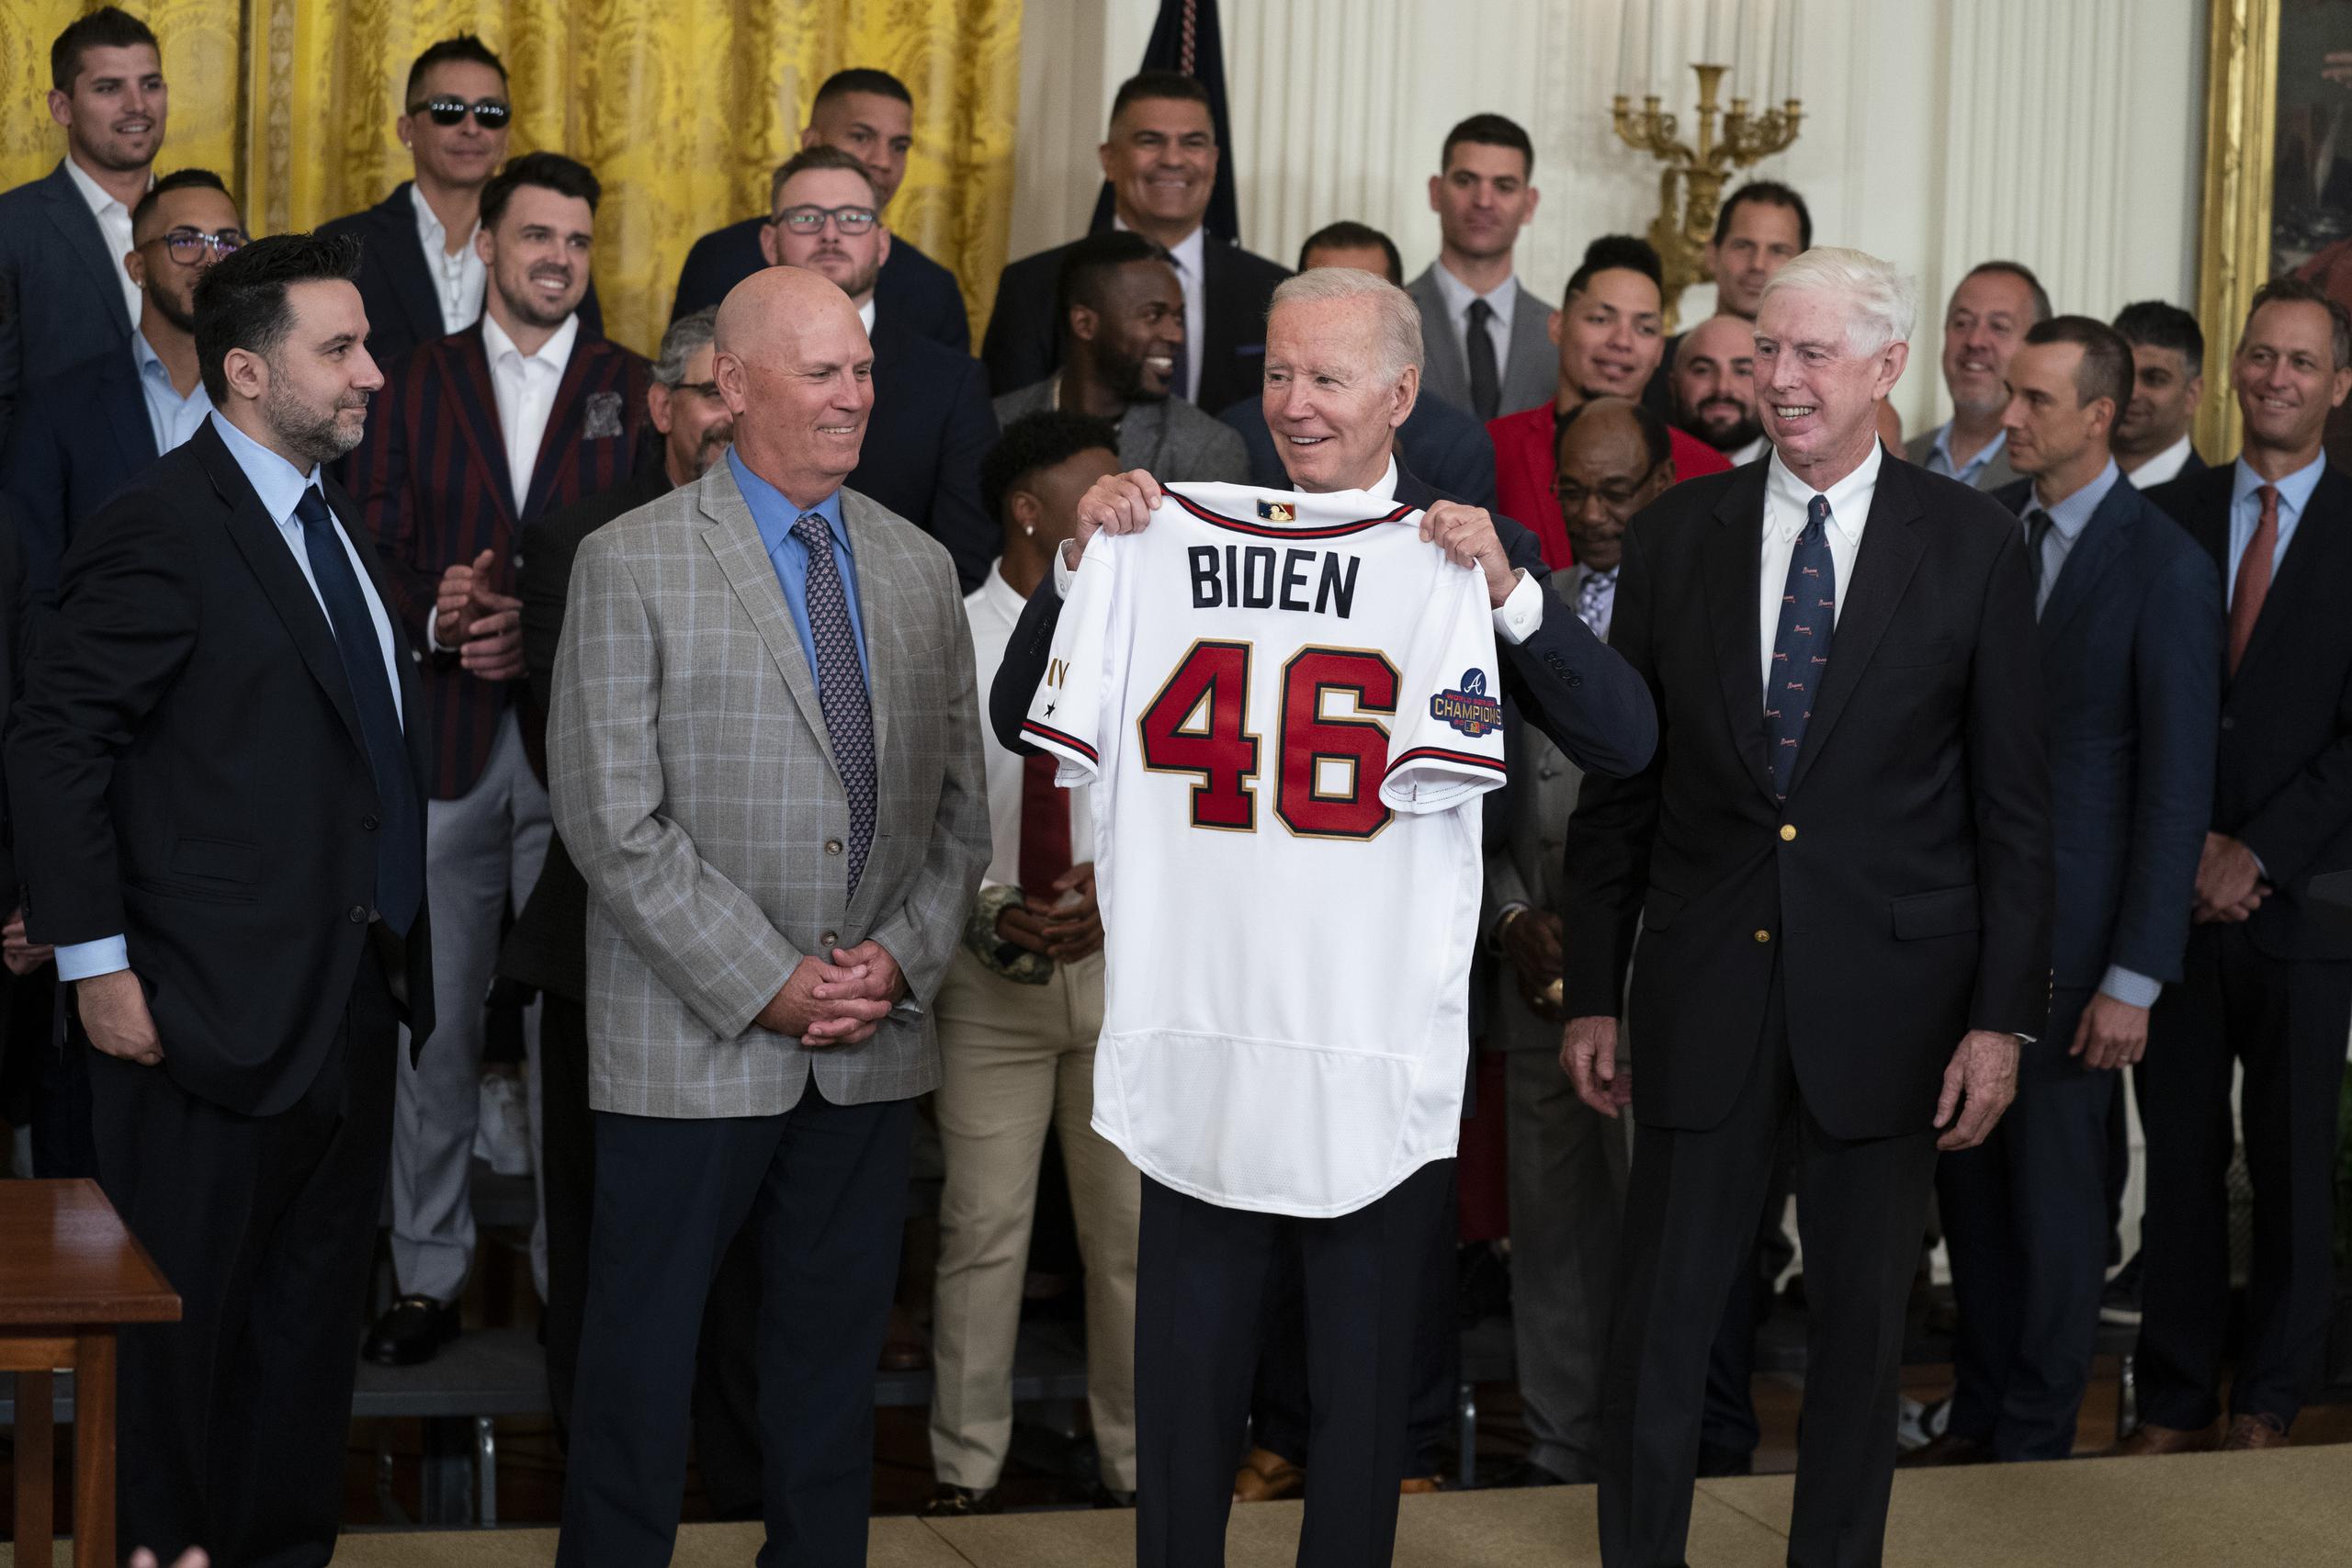 El presidente Joe Biden alza una casaca durante un acto en la Casa Blanca para homenajear a los Braves de Atlanta, campeones de la Serie Mundial.